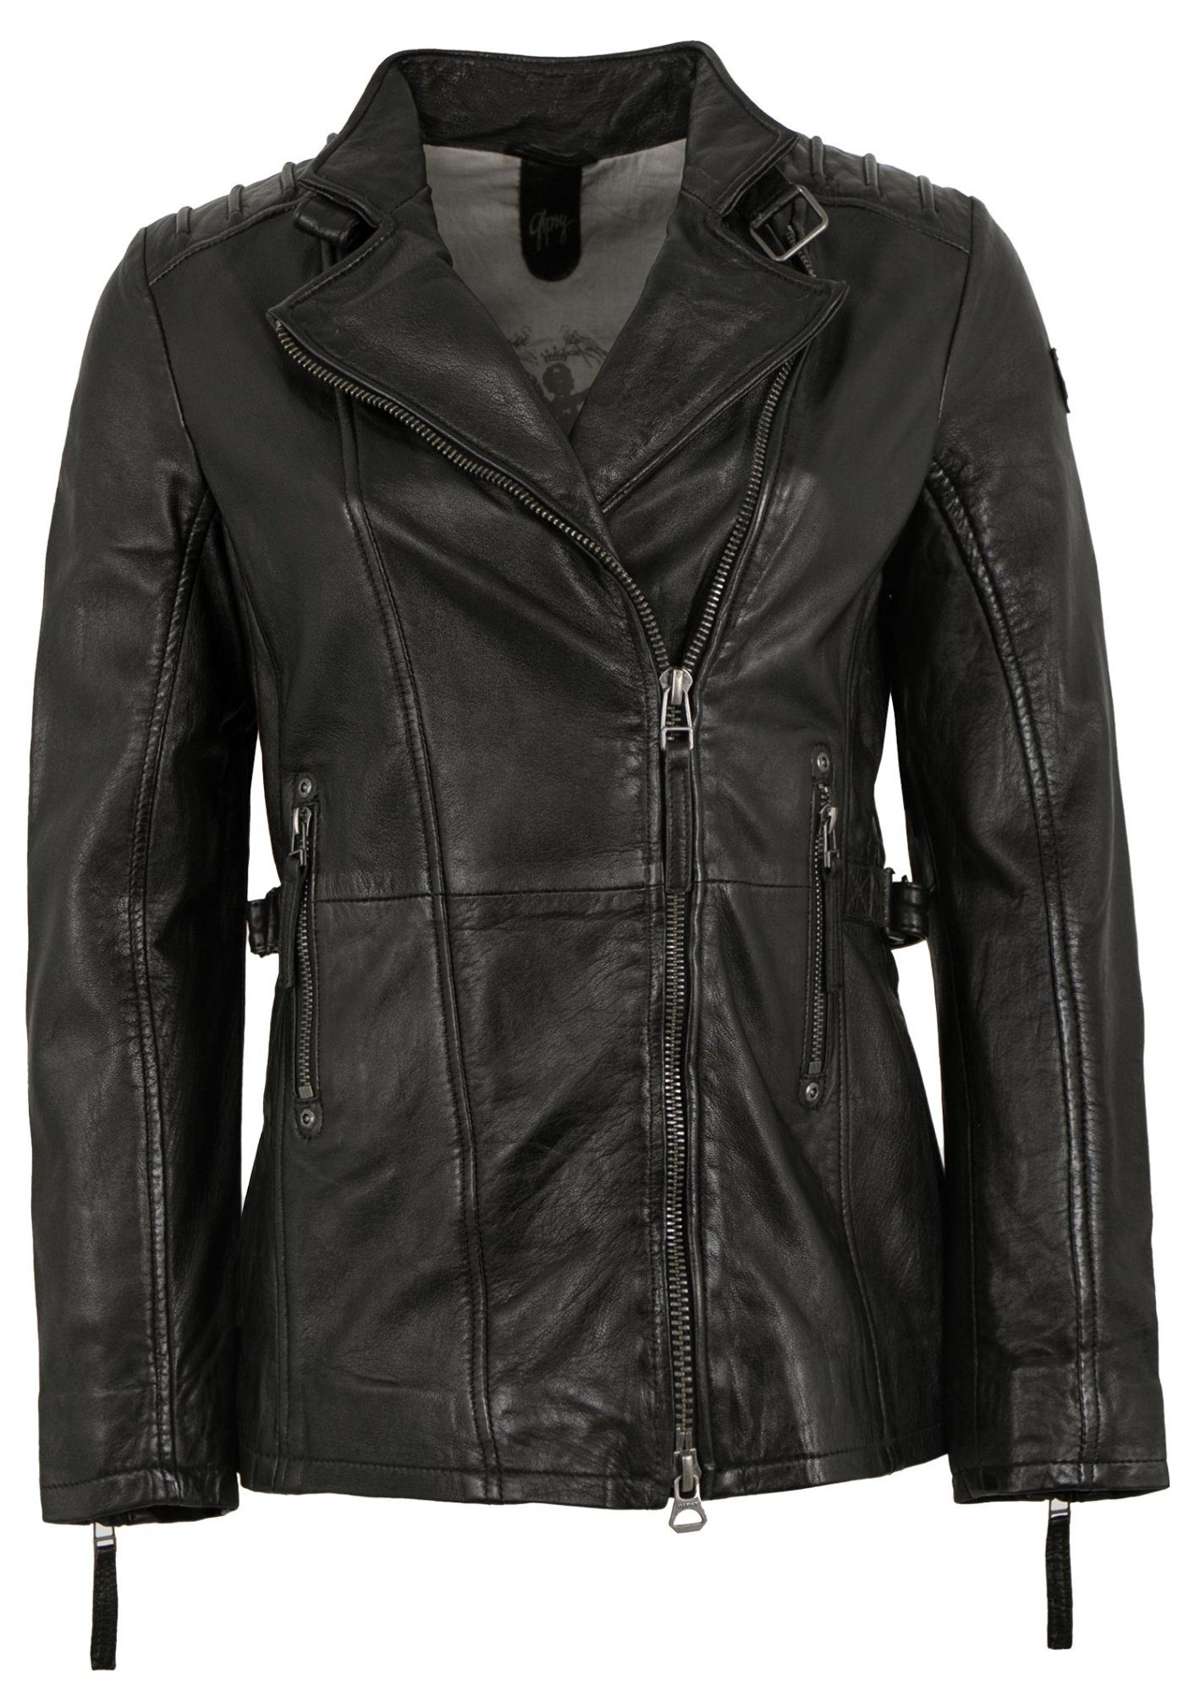 Кожаная куртка GWScandel - женская куртка из натуральной кожи наппа цвета ягненка черная